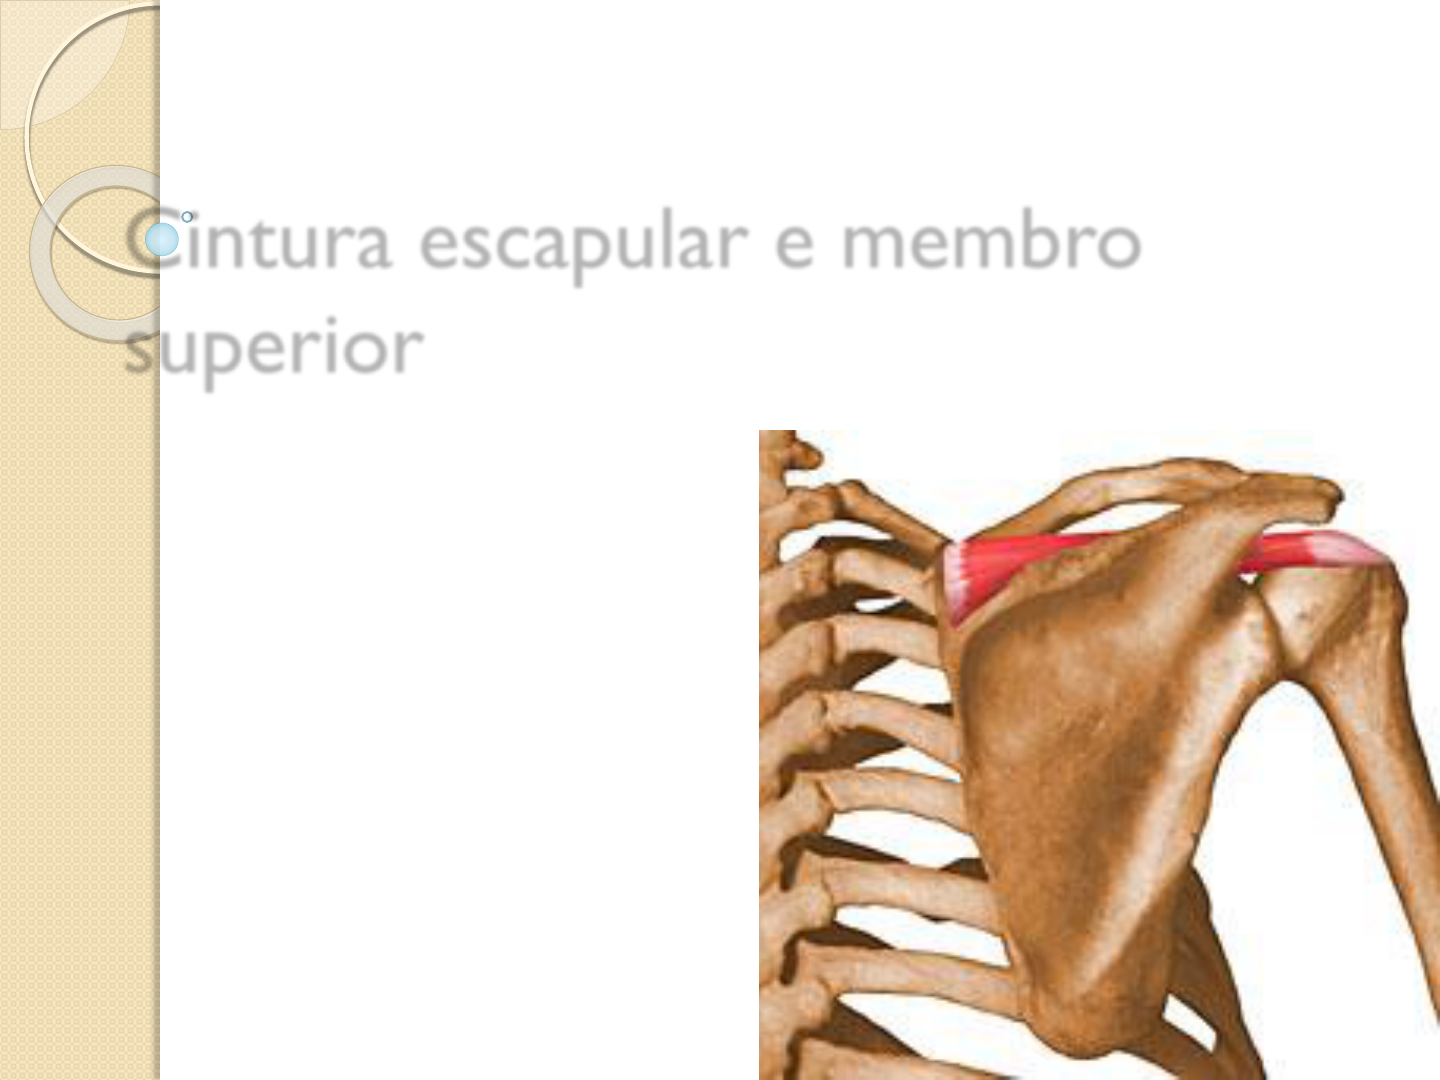 Anatomia do Aparelho Locomotor- Ossos cintura escapular e membro